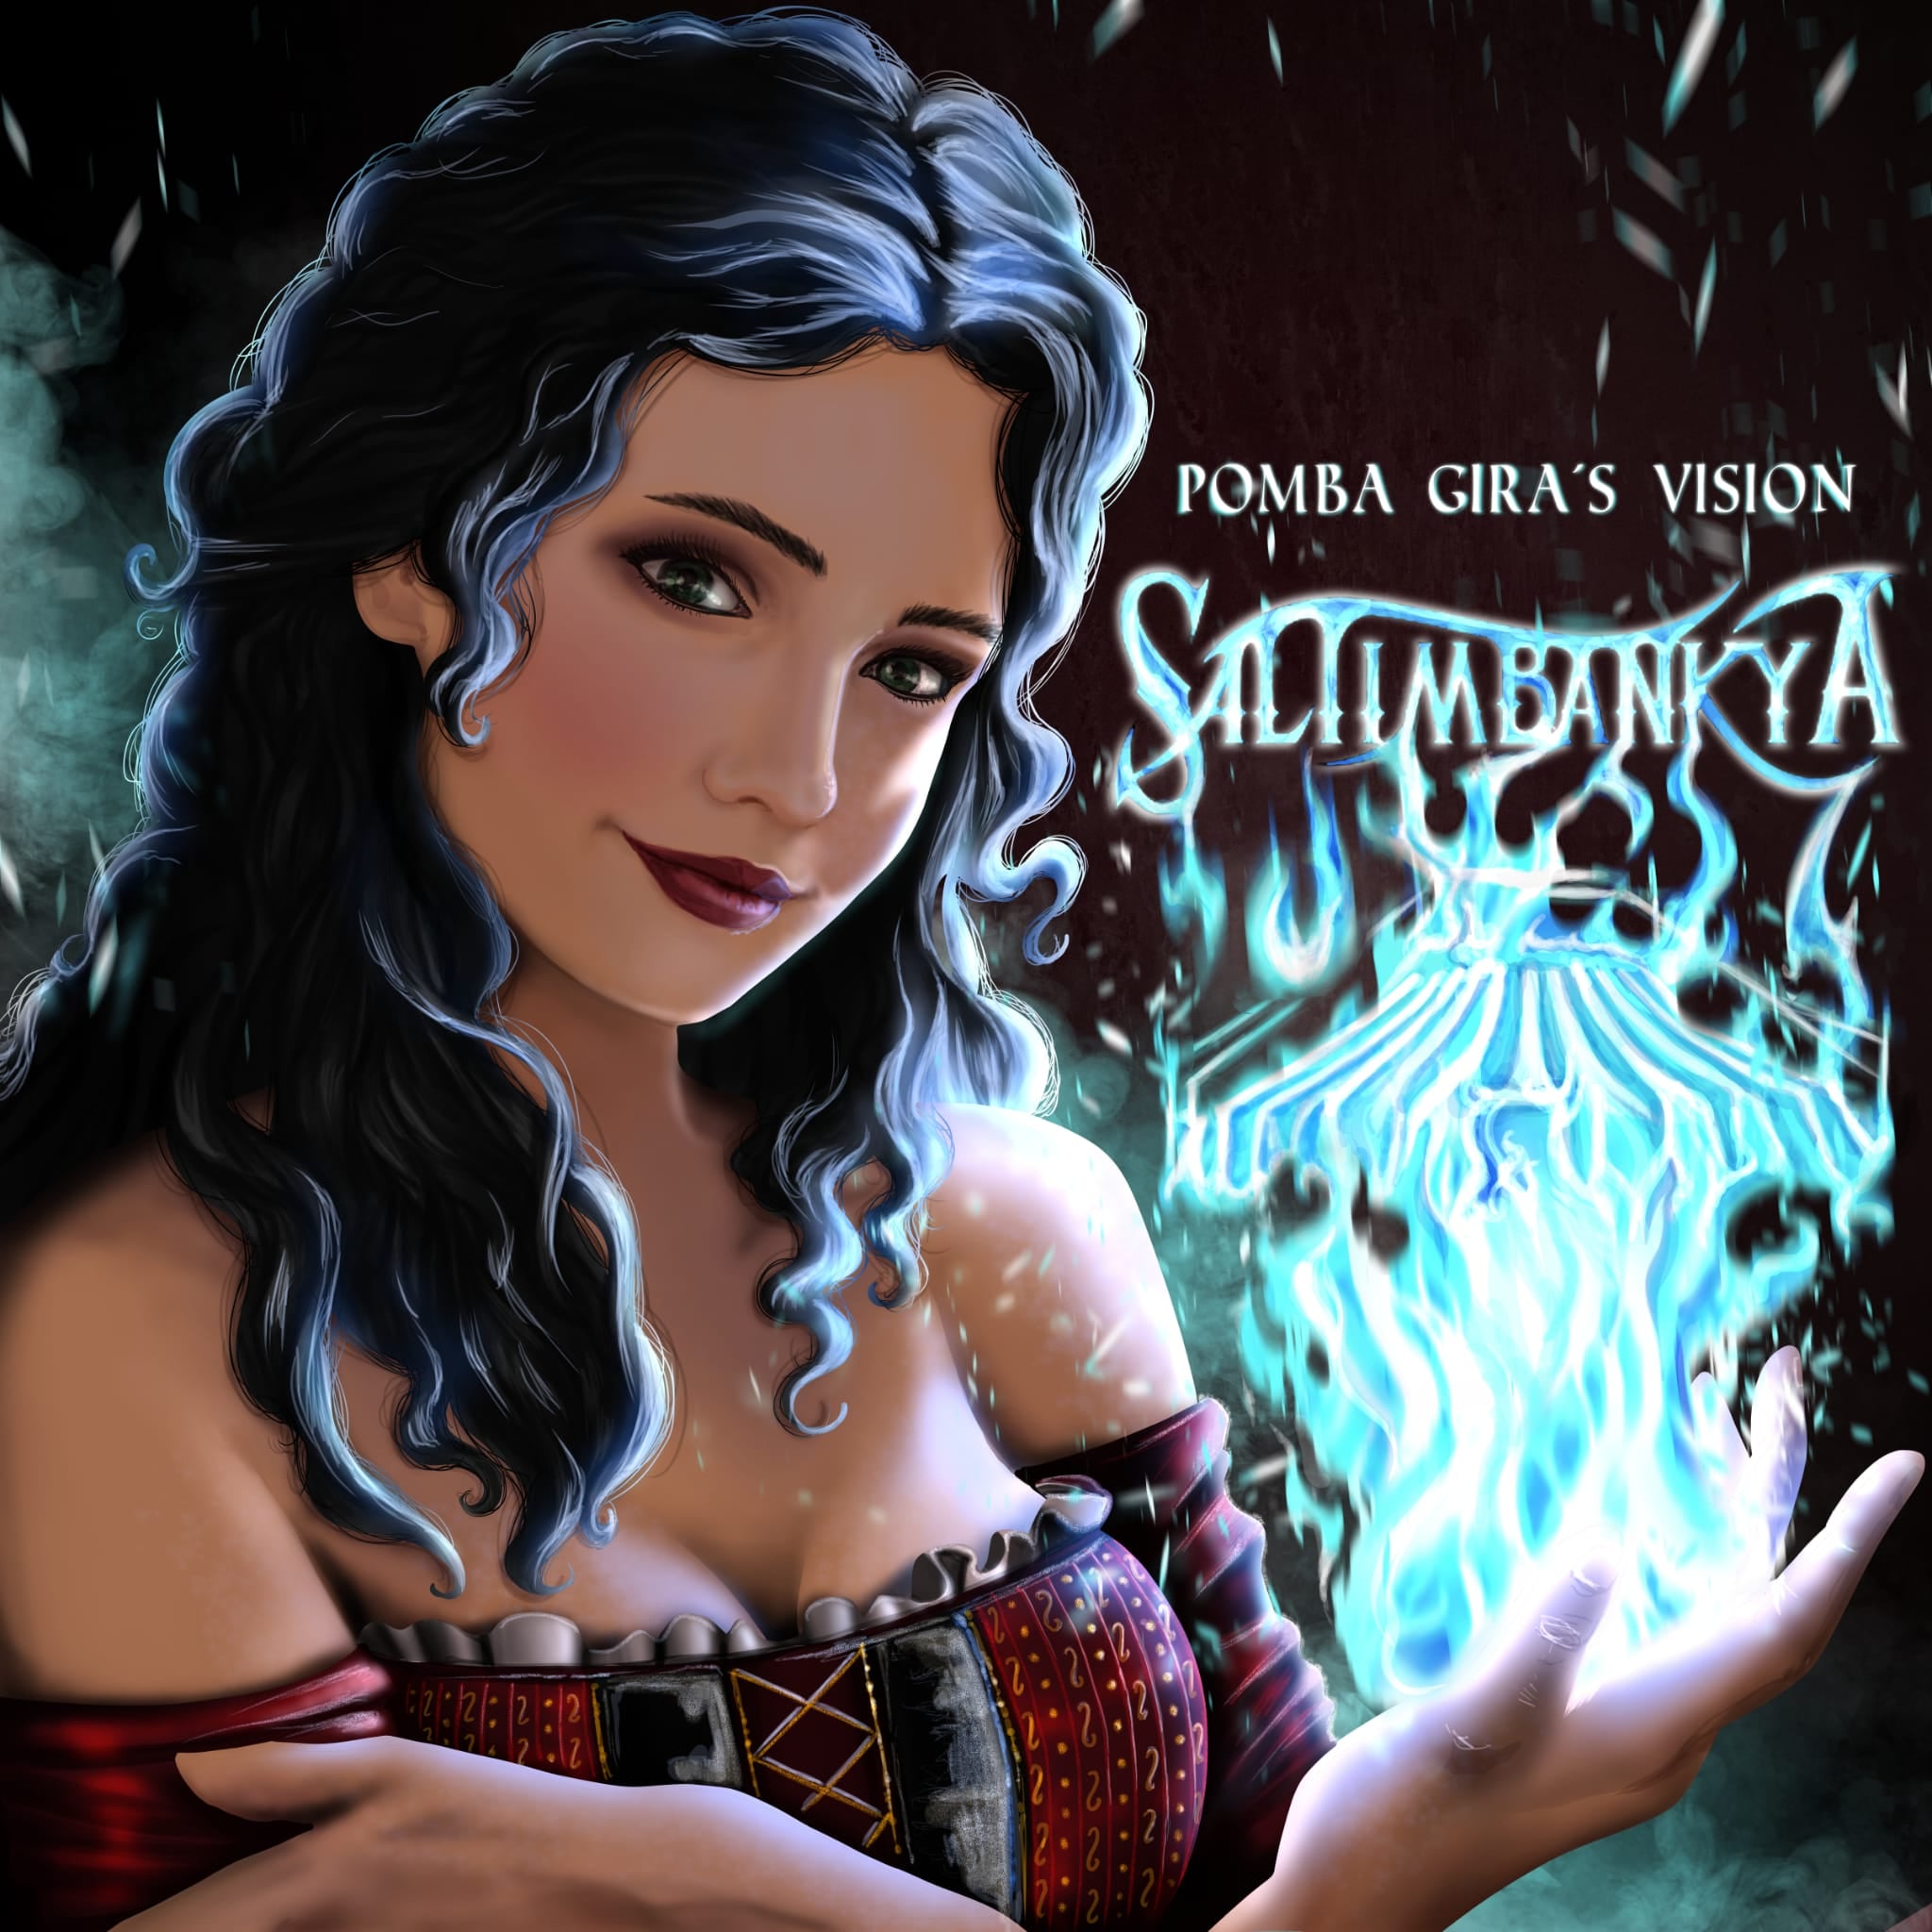 [Reseña] Locura Metal Circense con Saltibankya y su nuevo disco “Pomba Gira’s Vision”